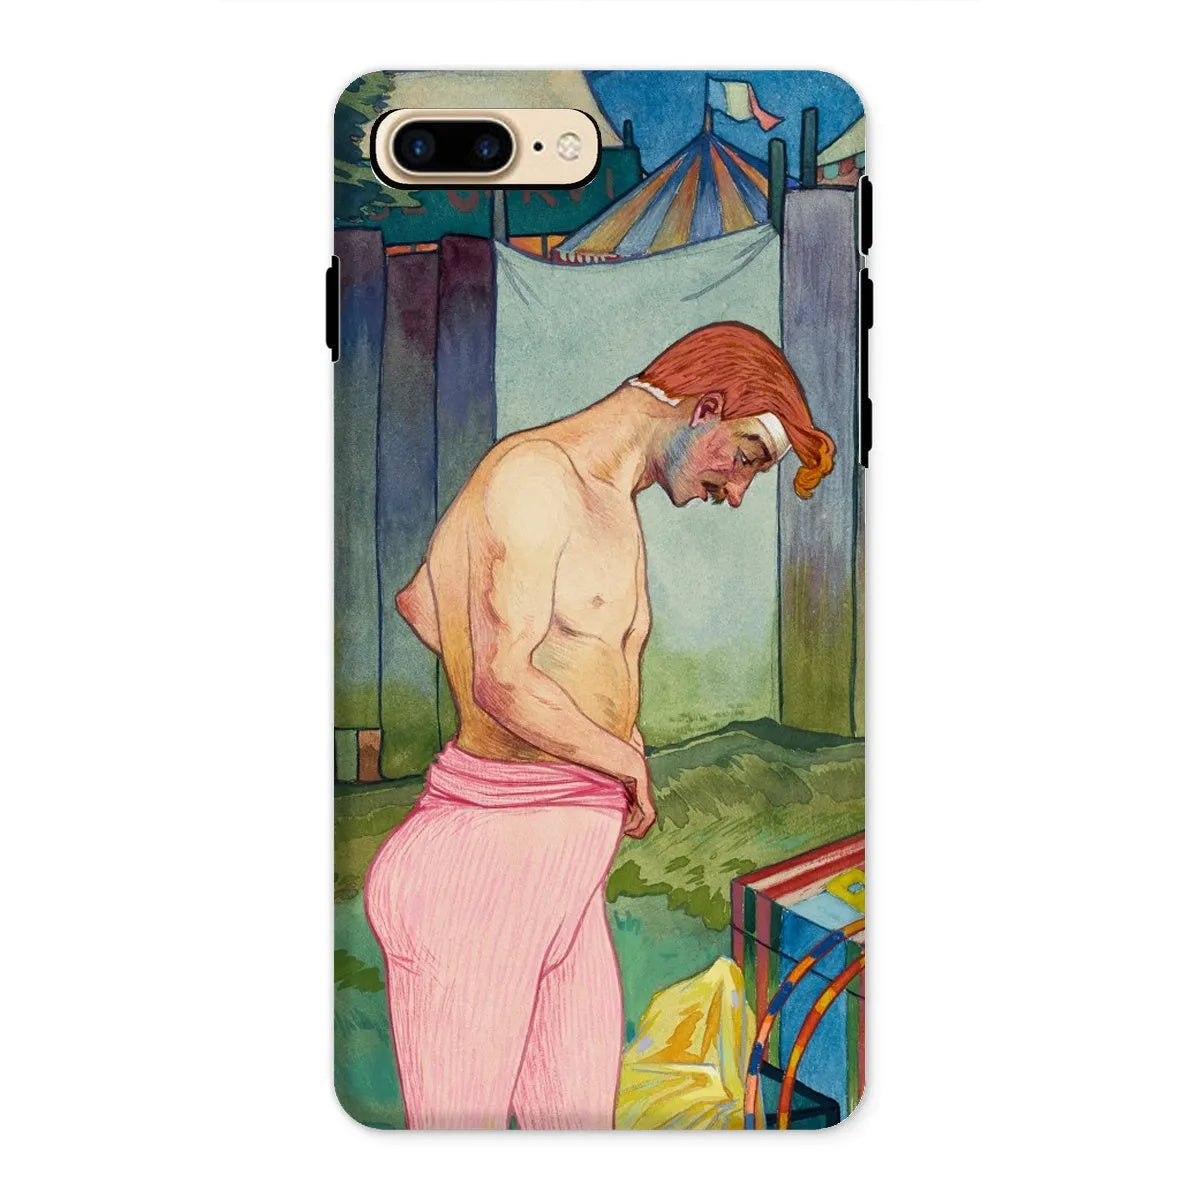 Le Cirque Corvi - Georges De Feure Art Nouveau Phone Case - Iphone 8 Plus / Matte - Mobile Phone Cases - Aesthetic Art